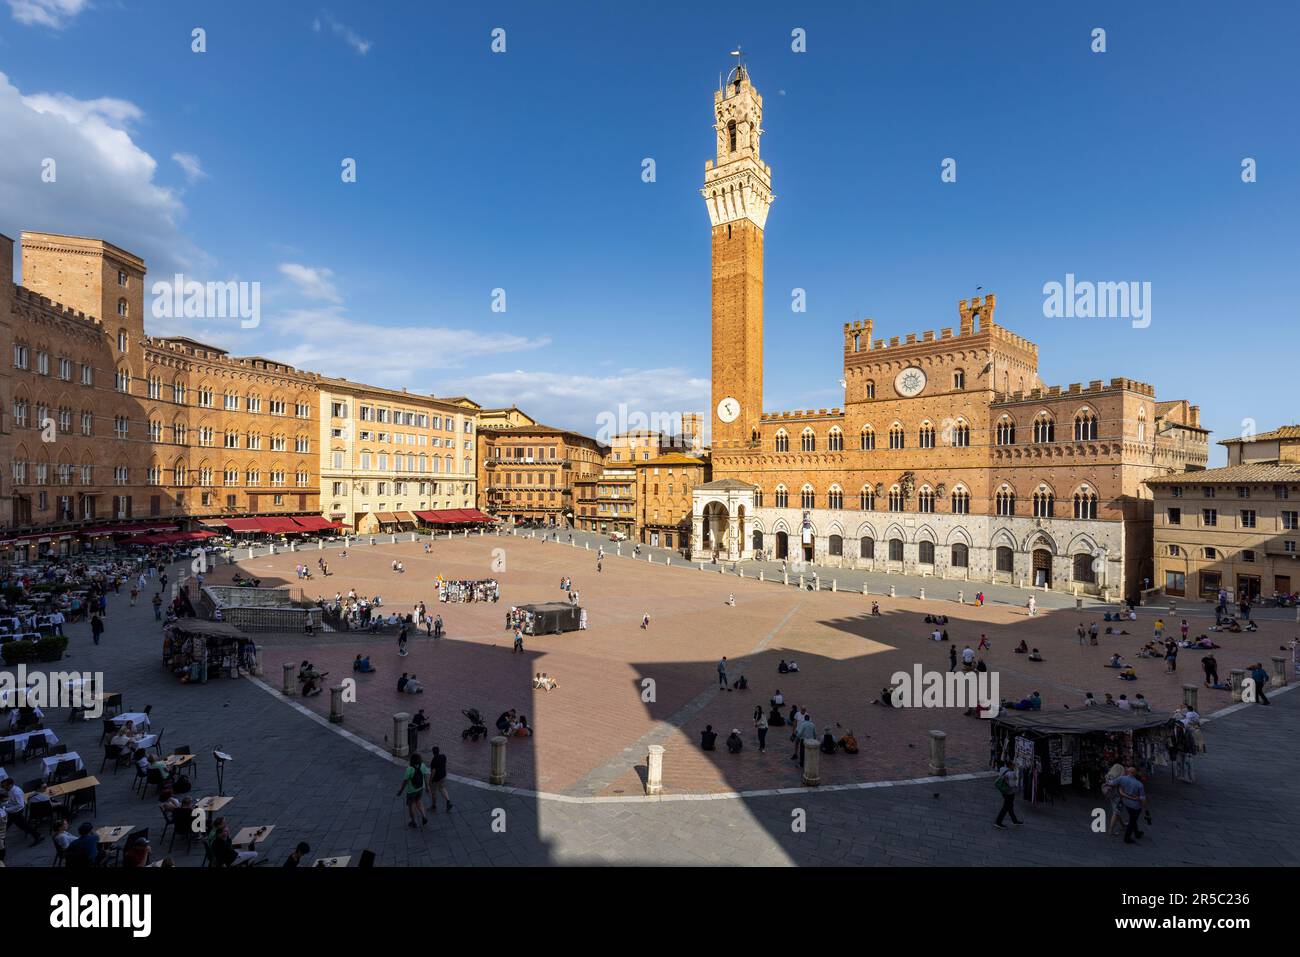 Sienne, province de Sienne, Toscane, Italie. Le Palazzo Pubblico avec la Torre de Mangia vue de l'autre côté de la Piazza del Campo. Le centre historique de Sienne Banque D'Images